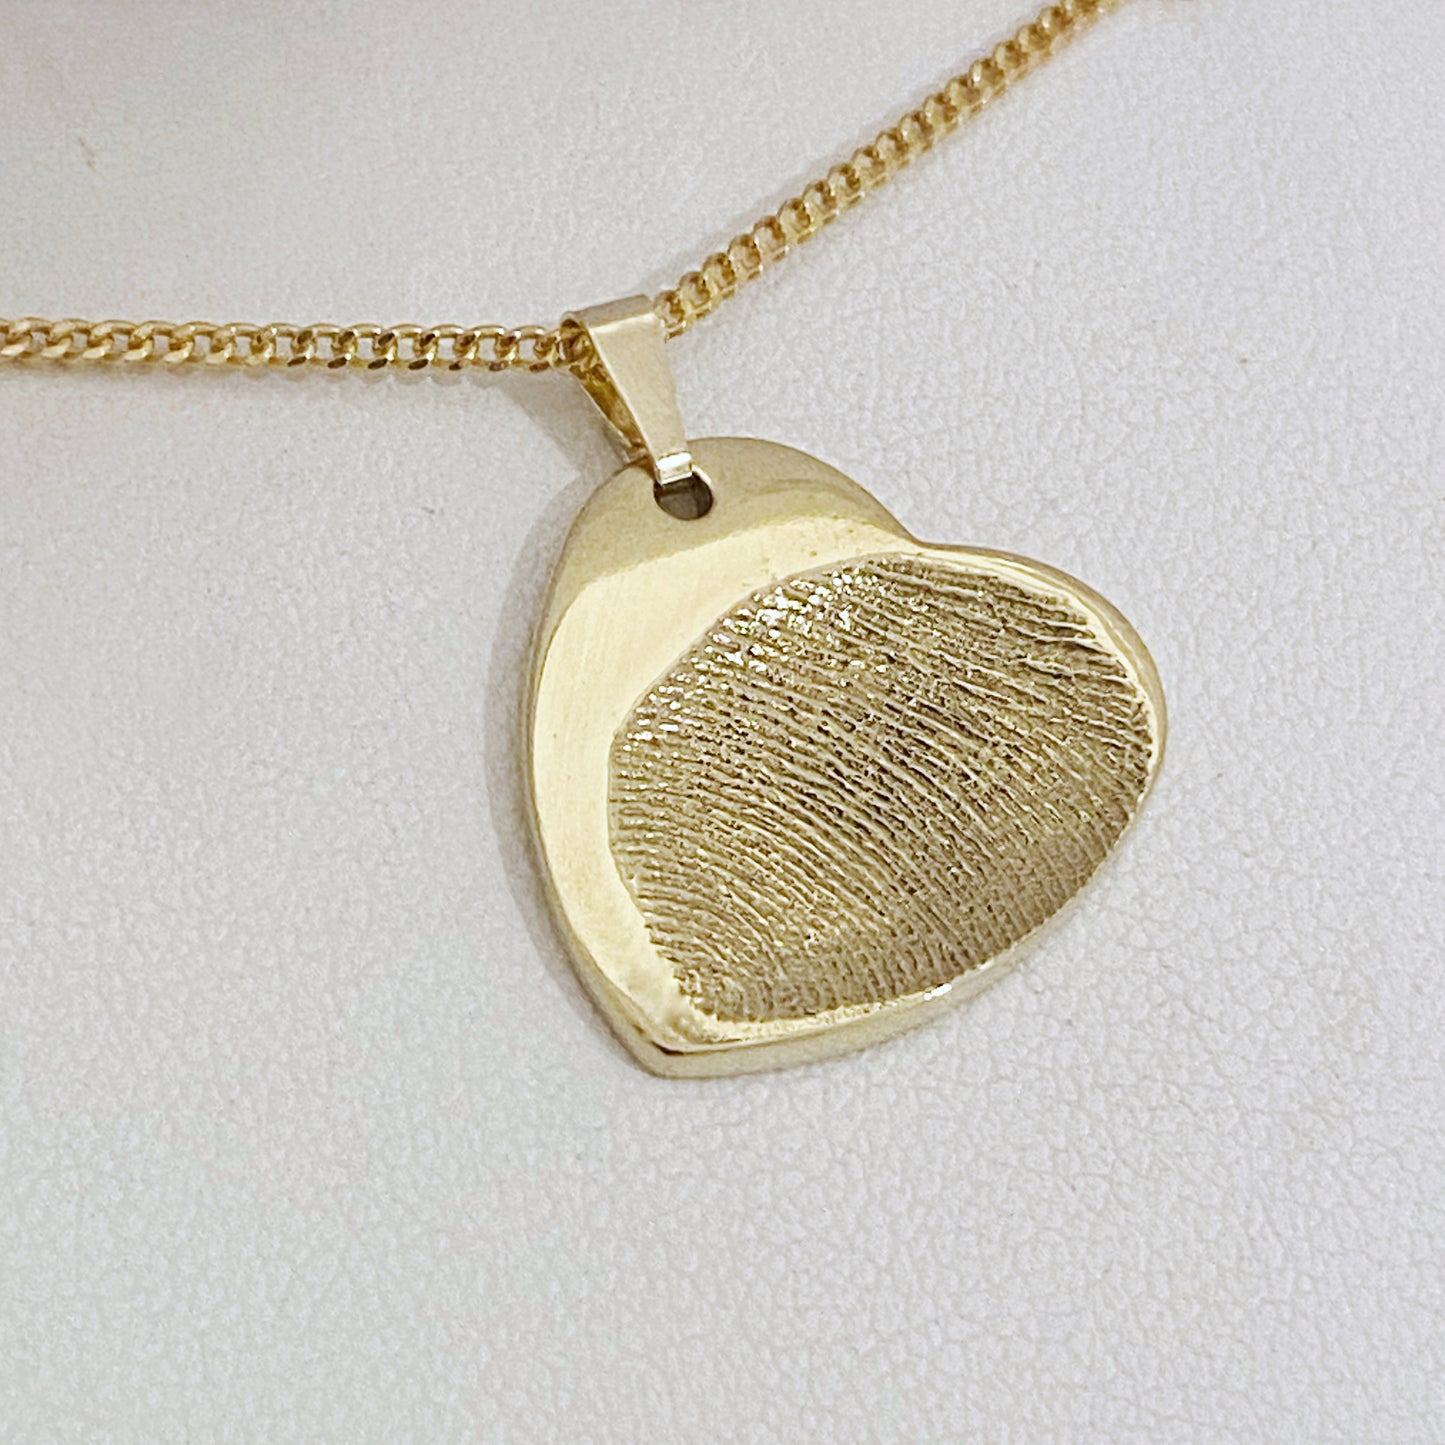 Gold Heart Fingerprint Pendant - Handcrafted keepsake capturing a fingerprint impression. Symbolizes love and connection